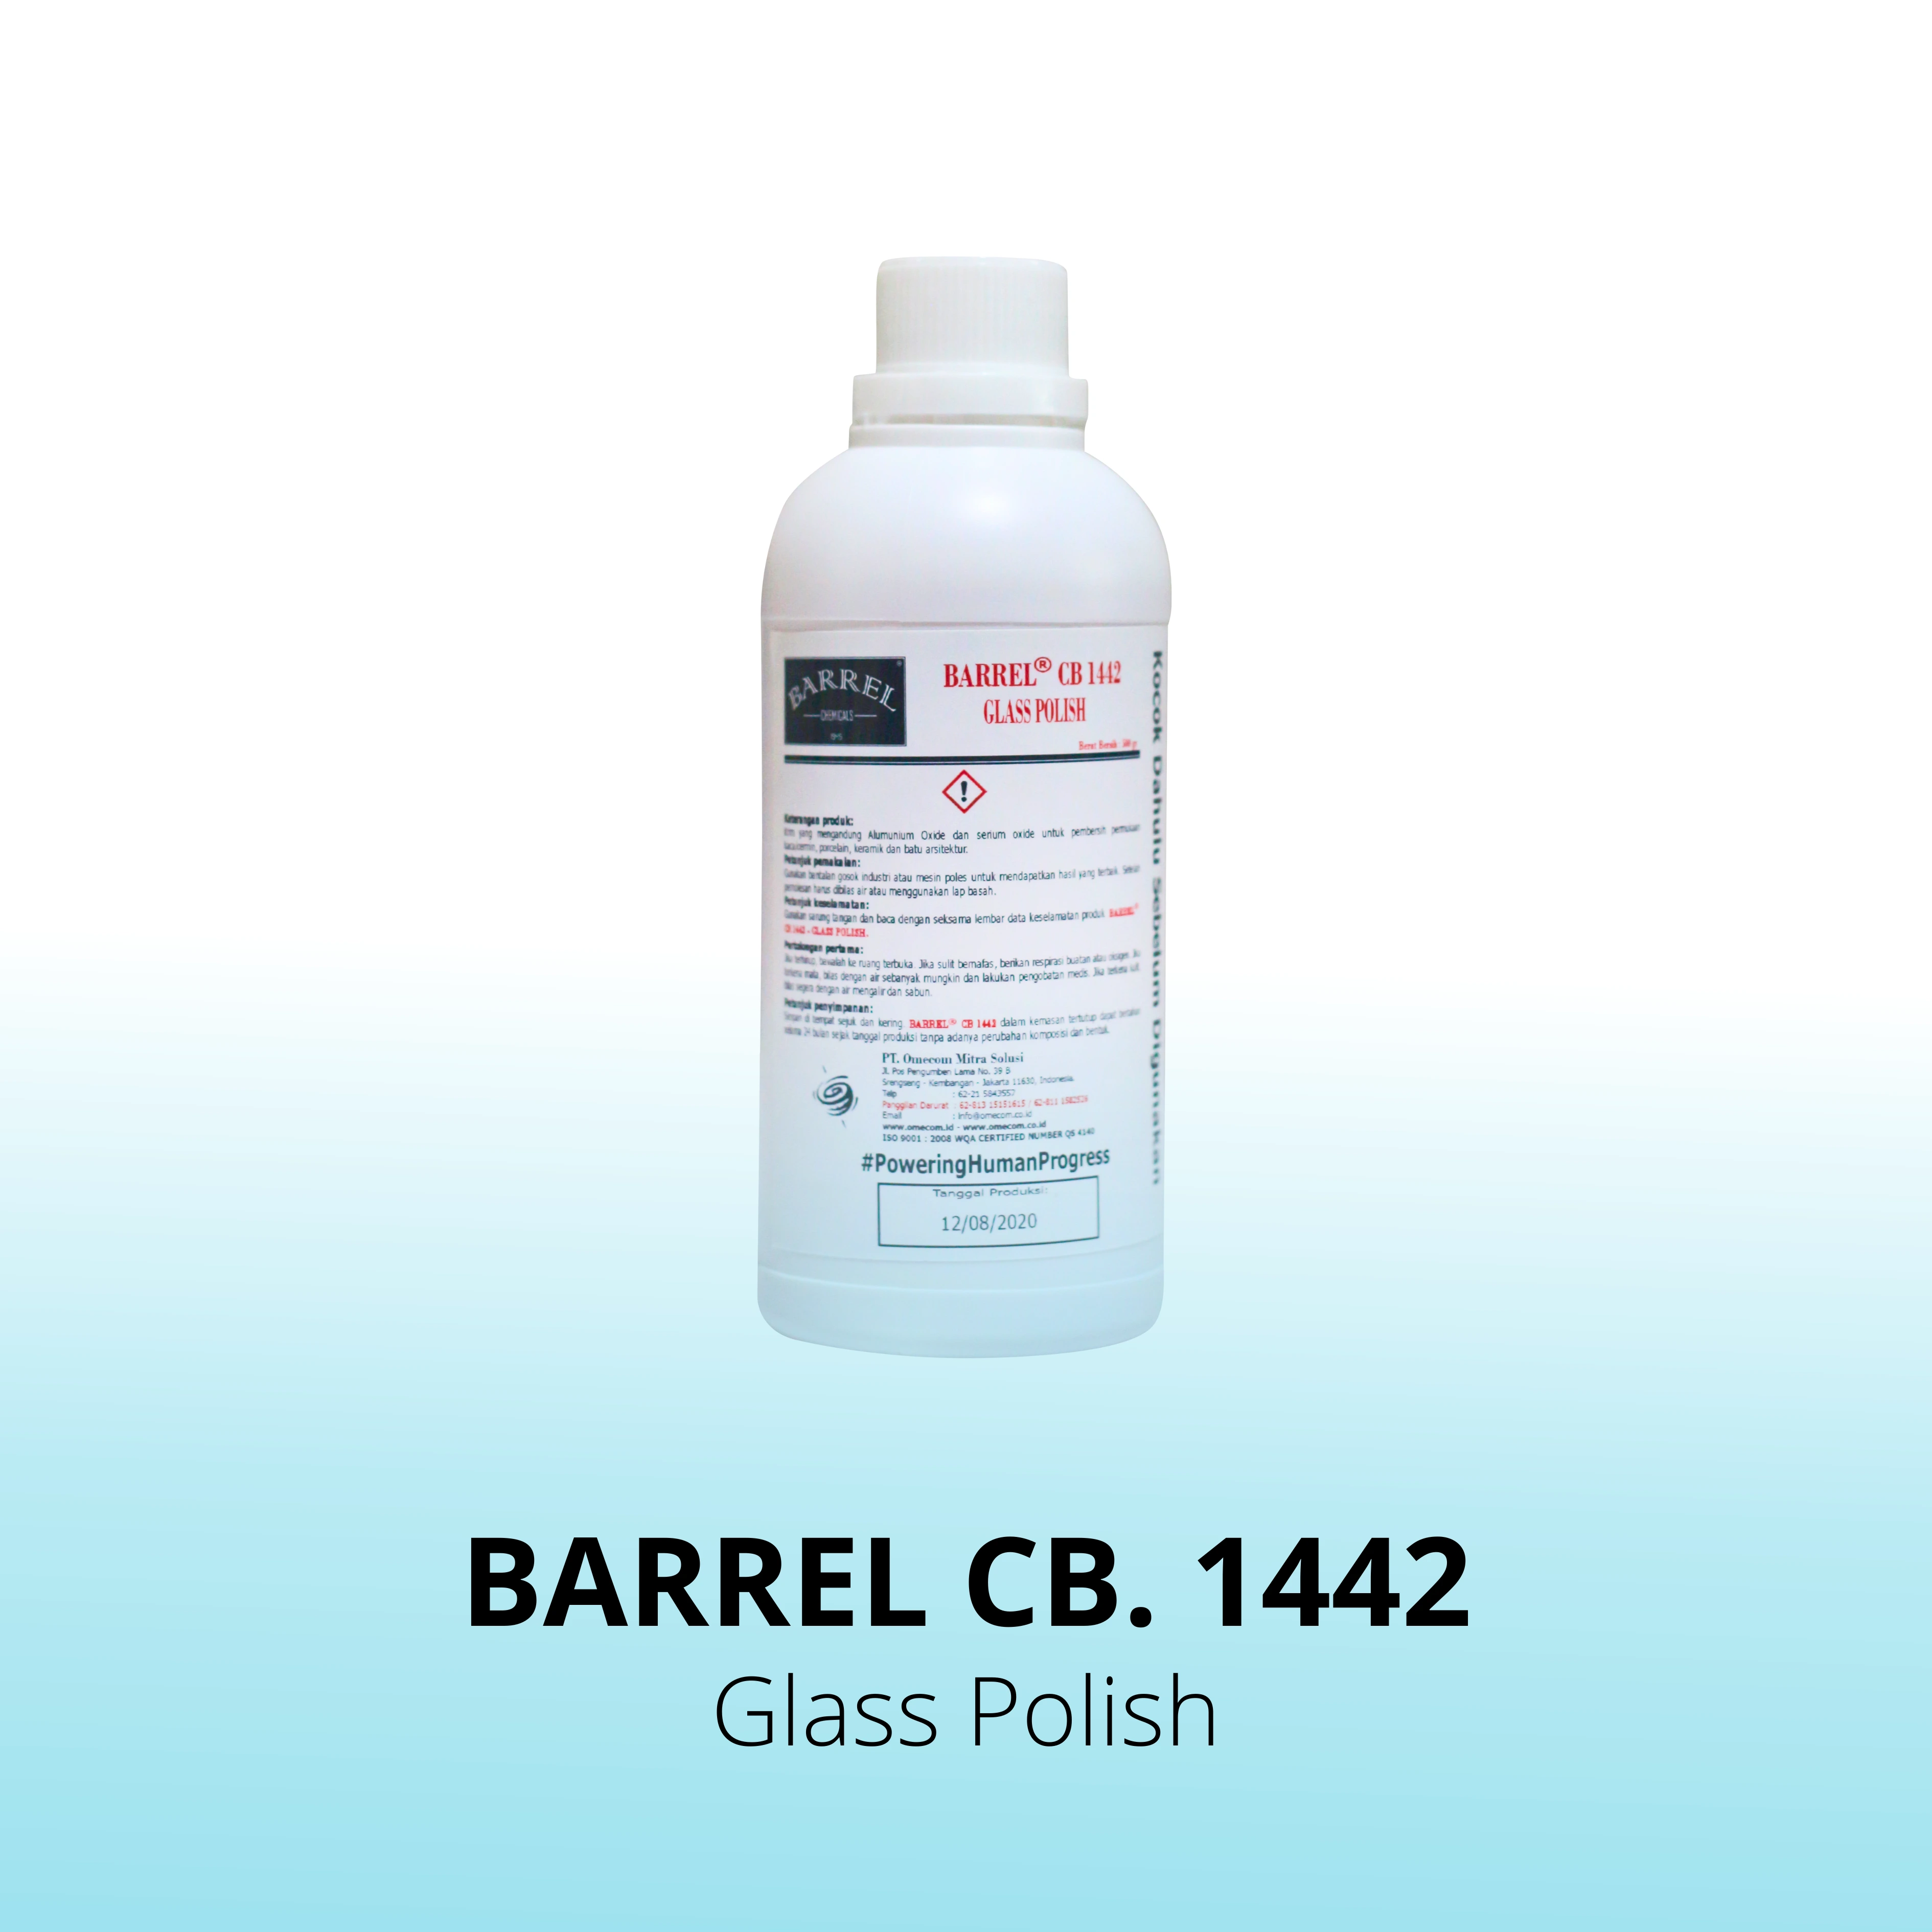 Barrel CB. 1442